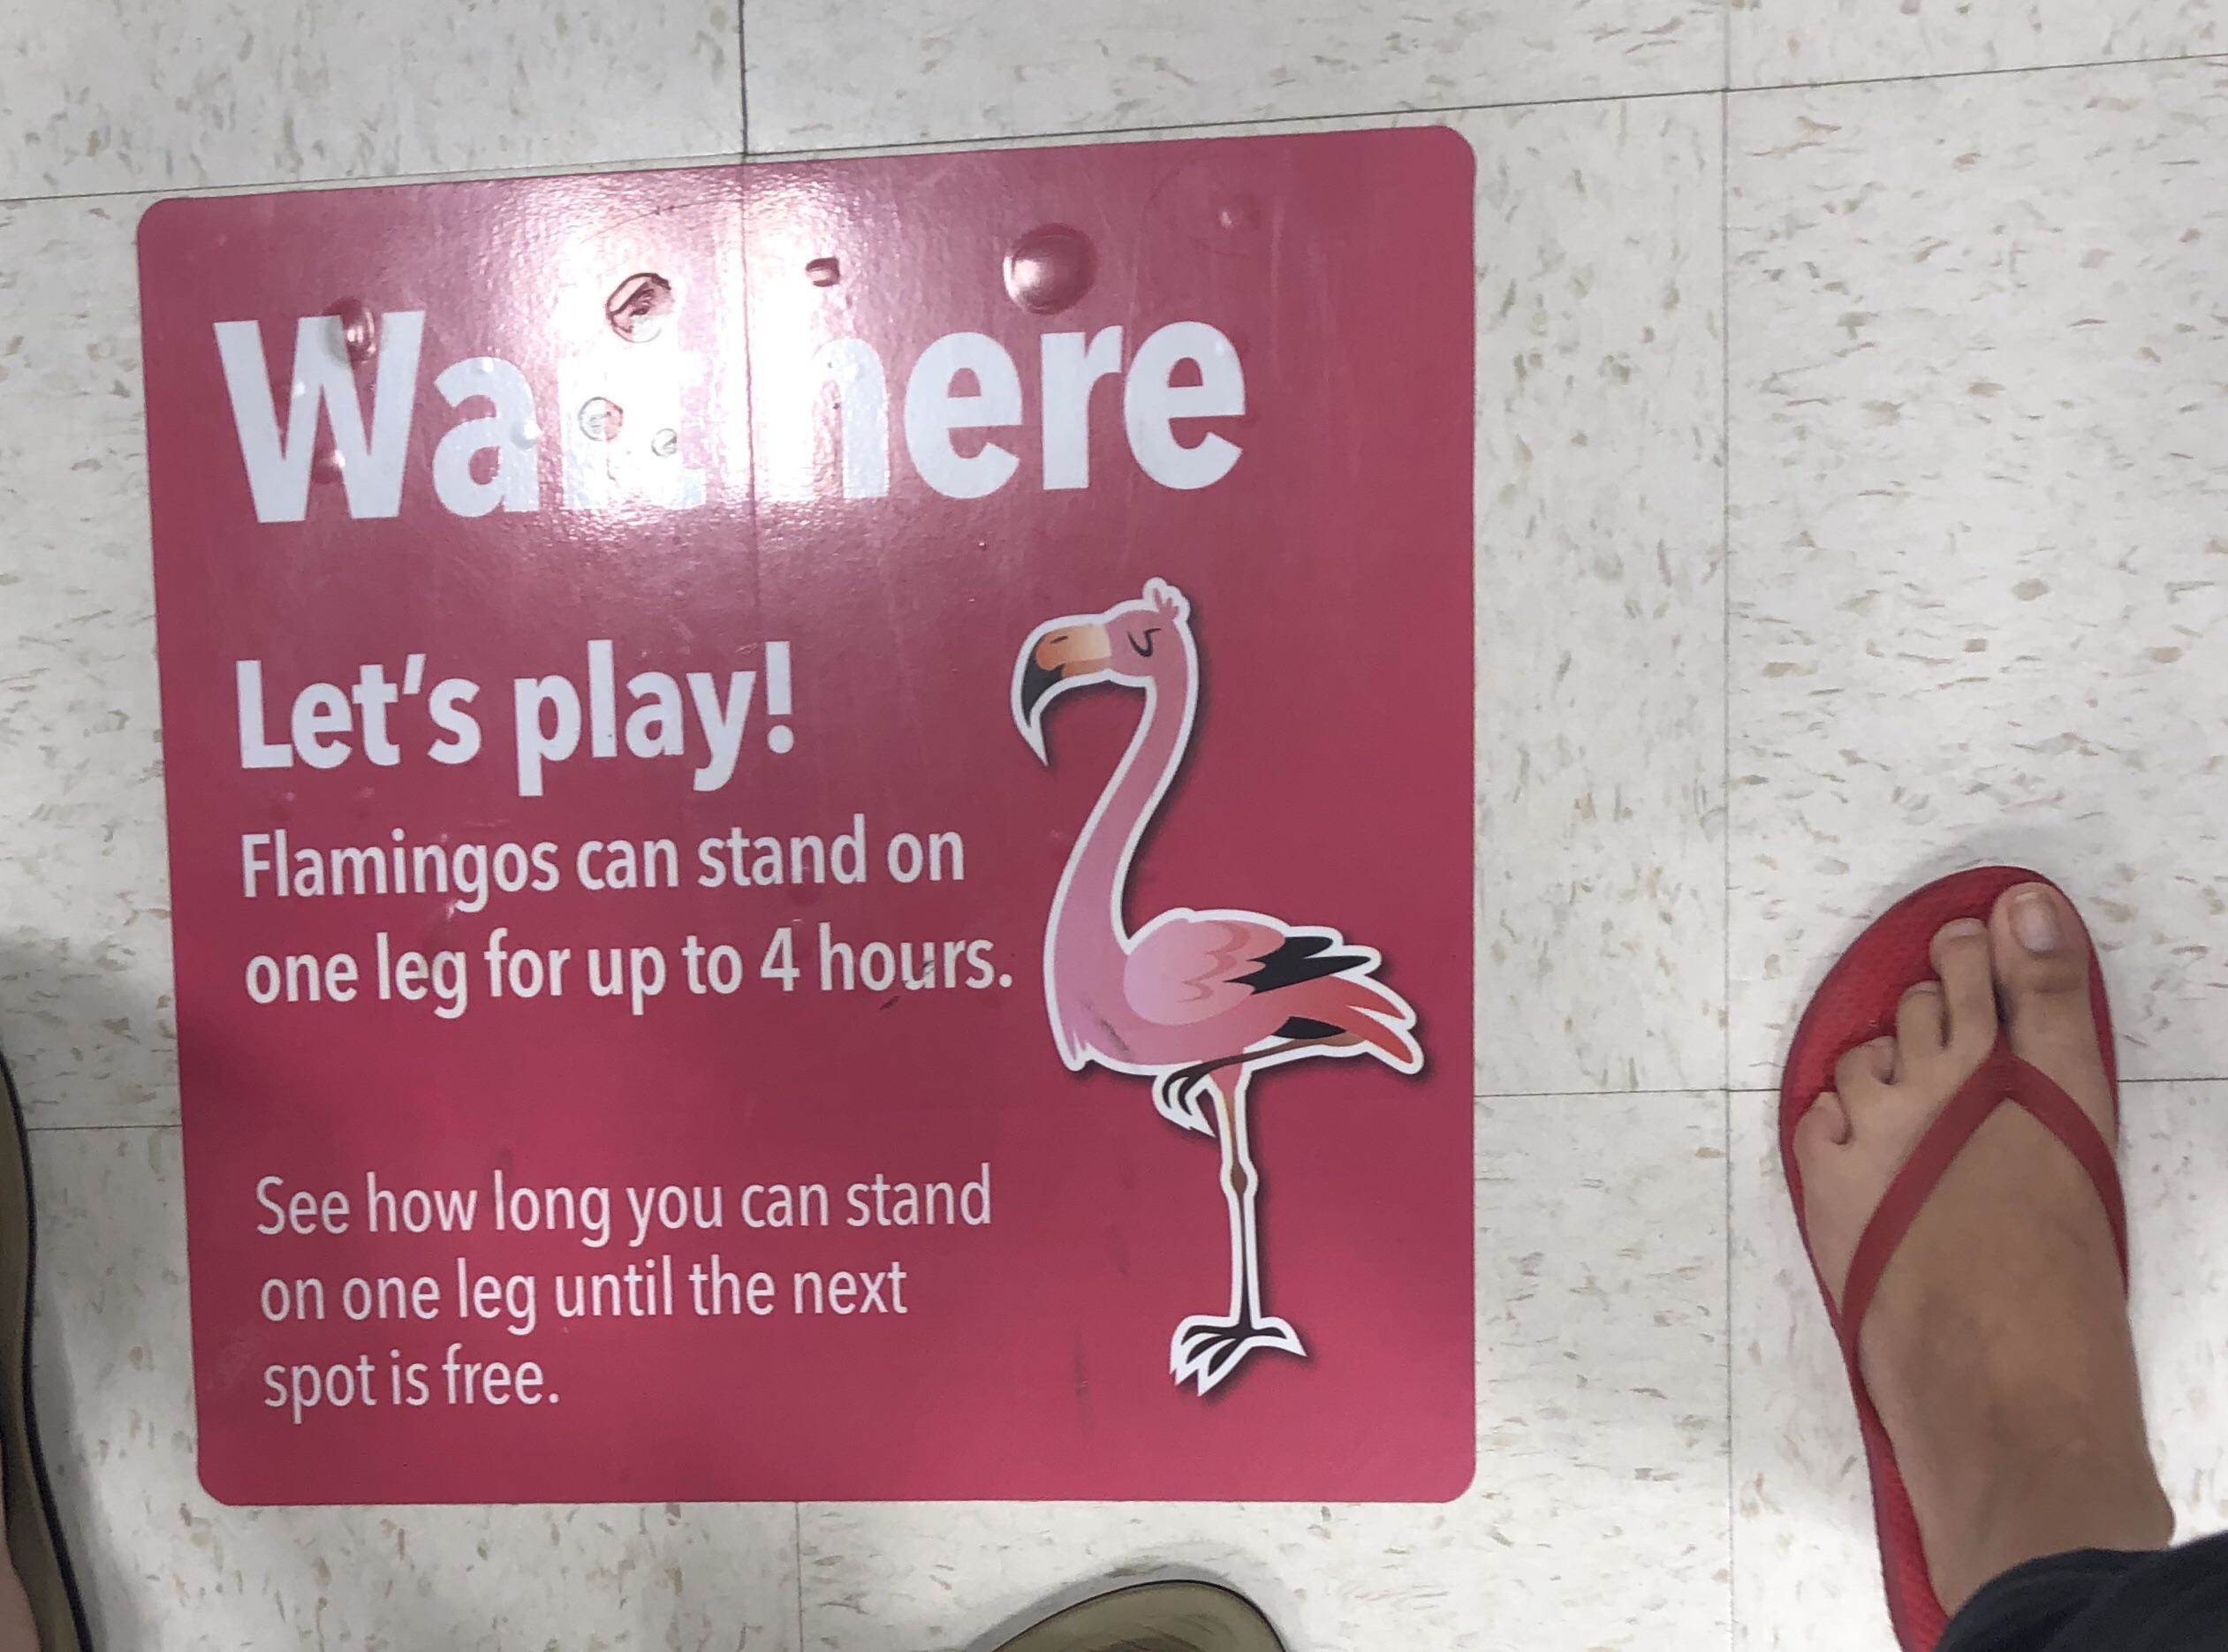 地板上标记以火烈鸟,鼓励孩子们站在一条腿